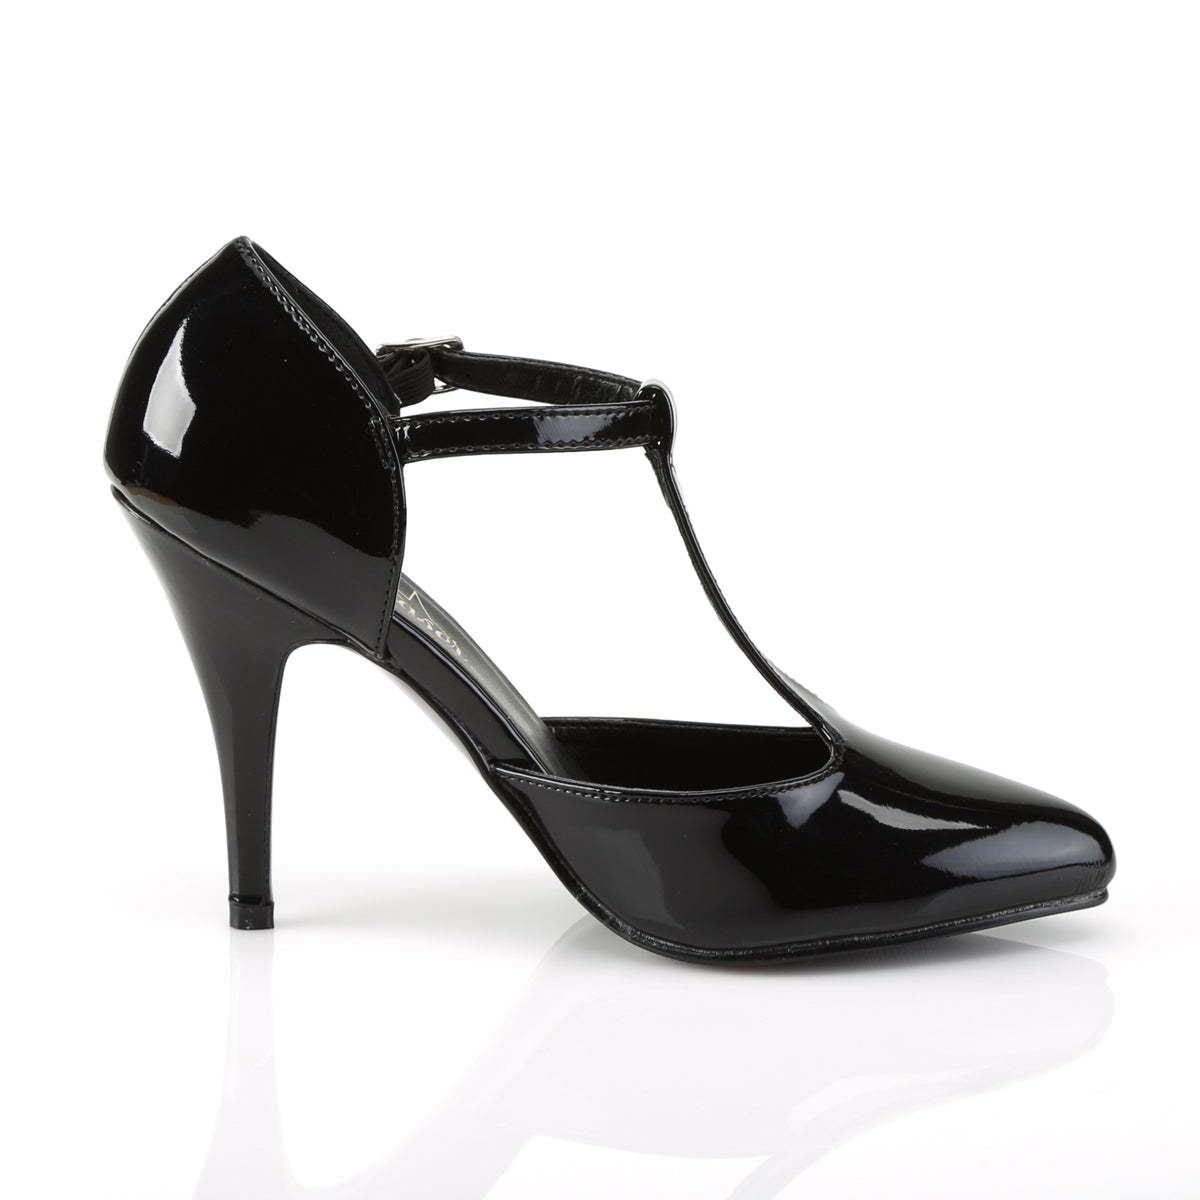 VANITY-415 Pleaser Shoe 4" Heel Black Patent Fetish Footwear-Pleaser- Sexy Shoes Fetish Heels